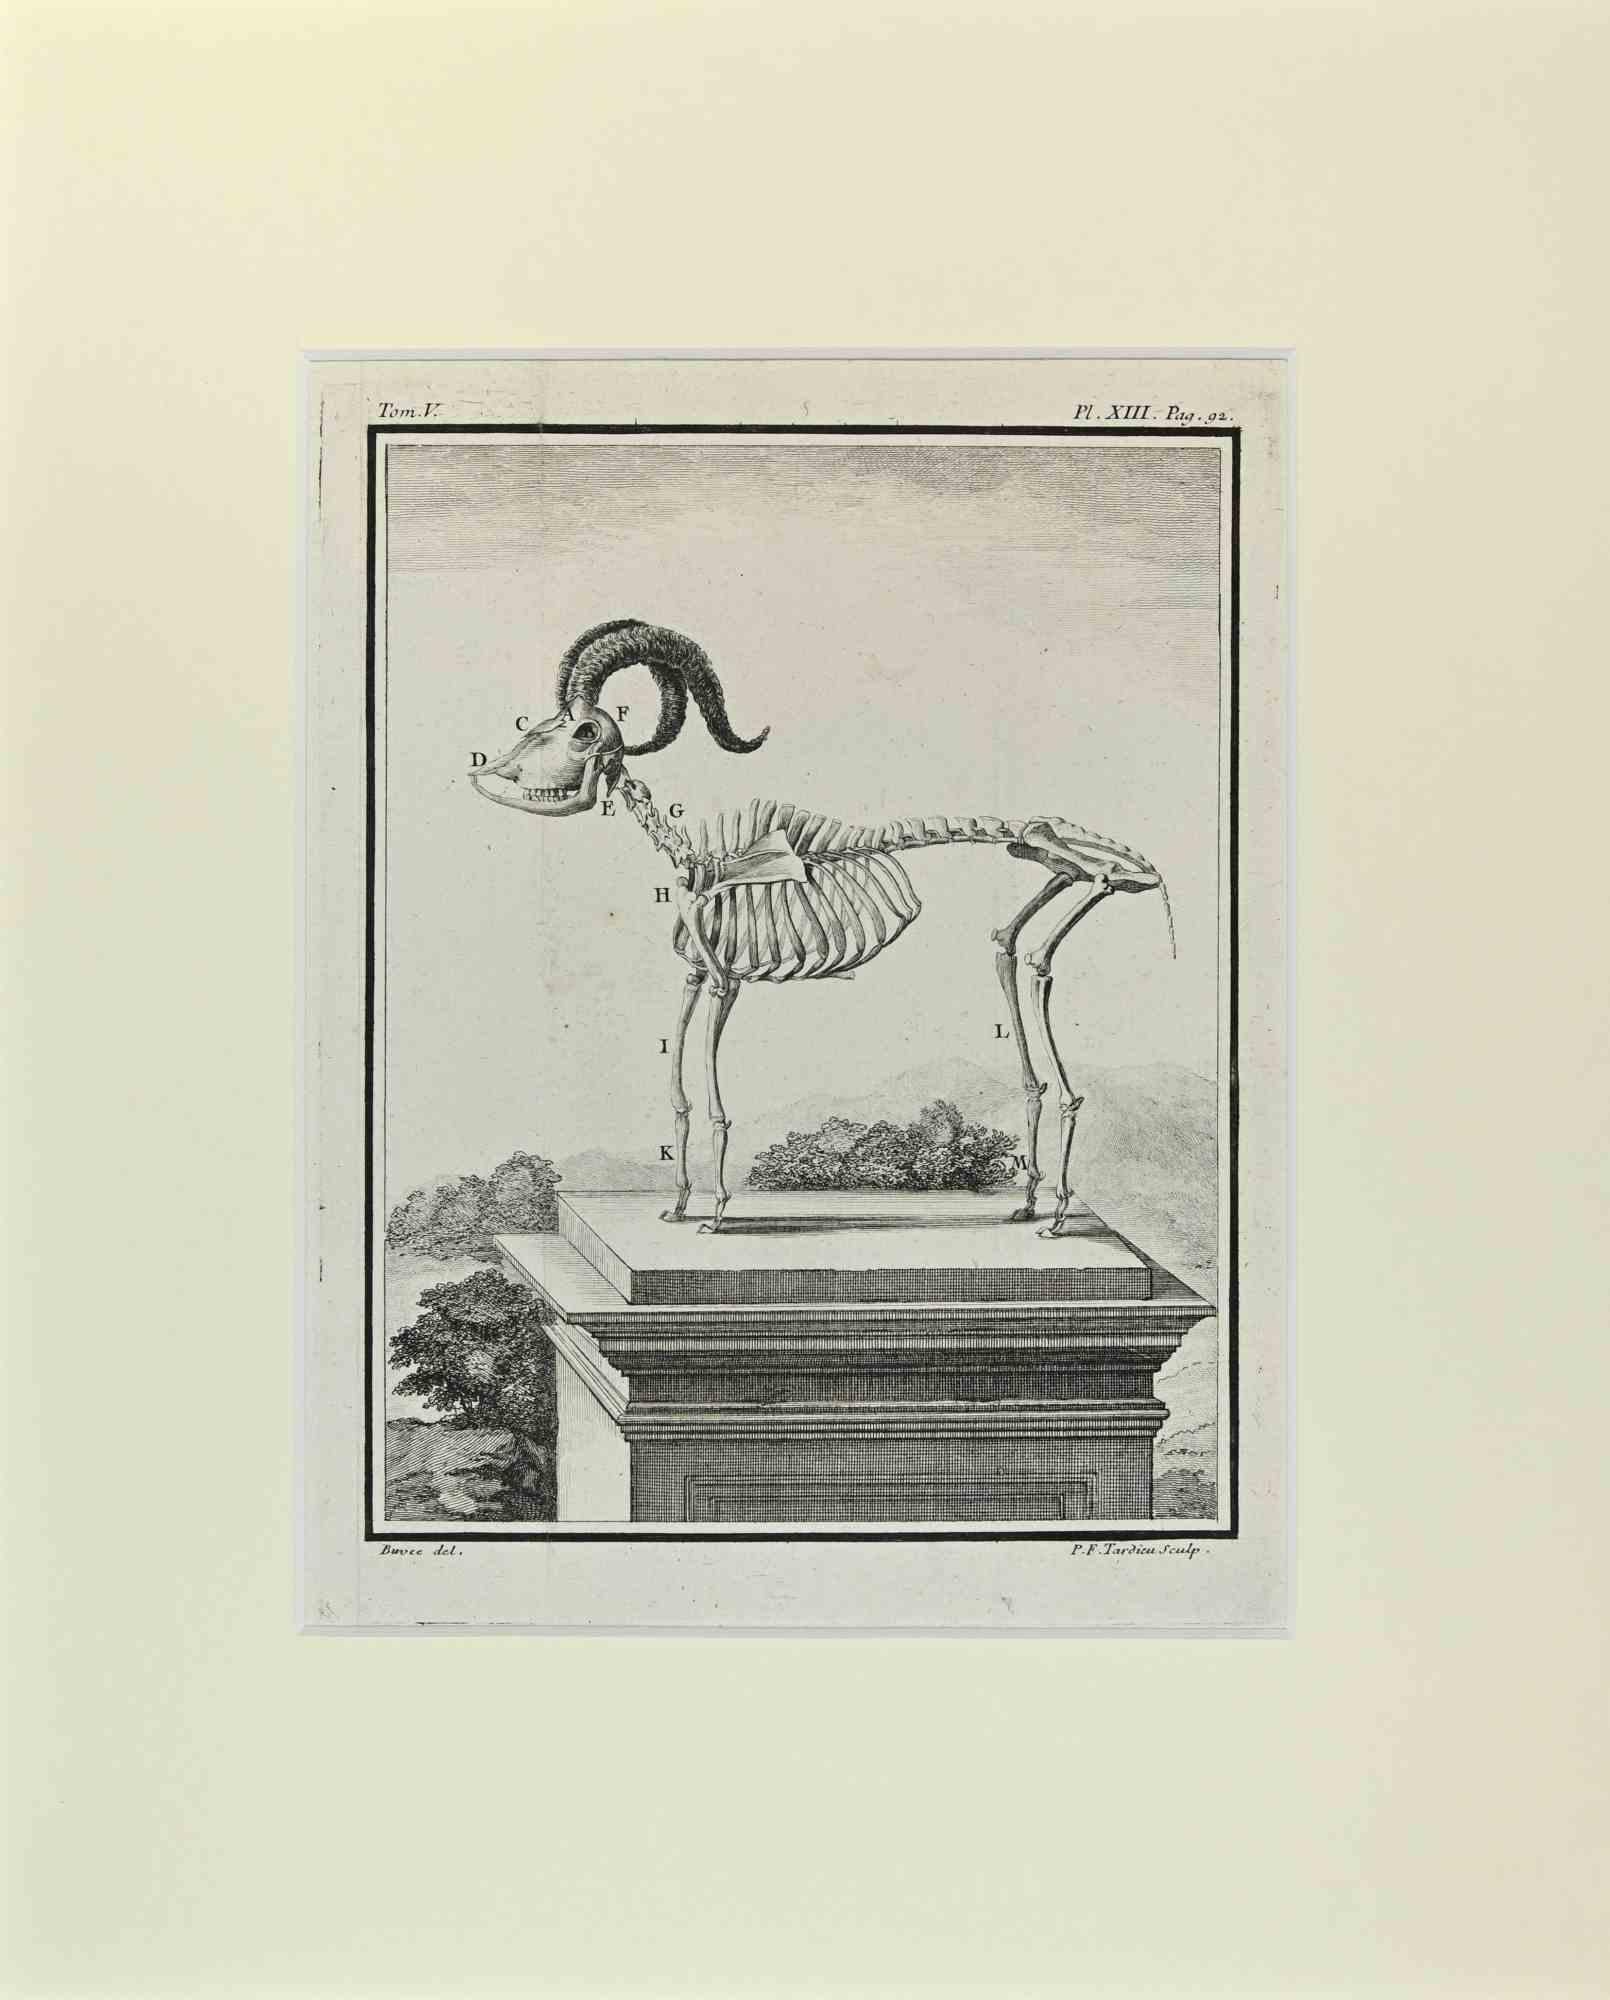 Mouflon Wild Sheep - Etching by Buvée l'Américain - 1771